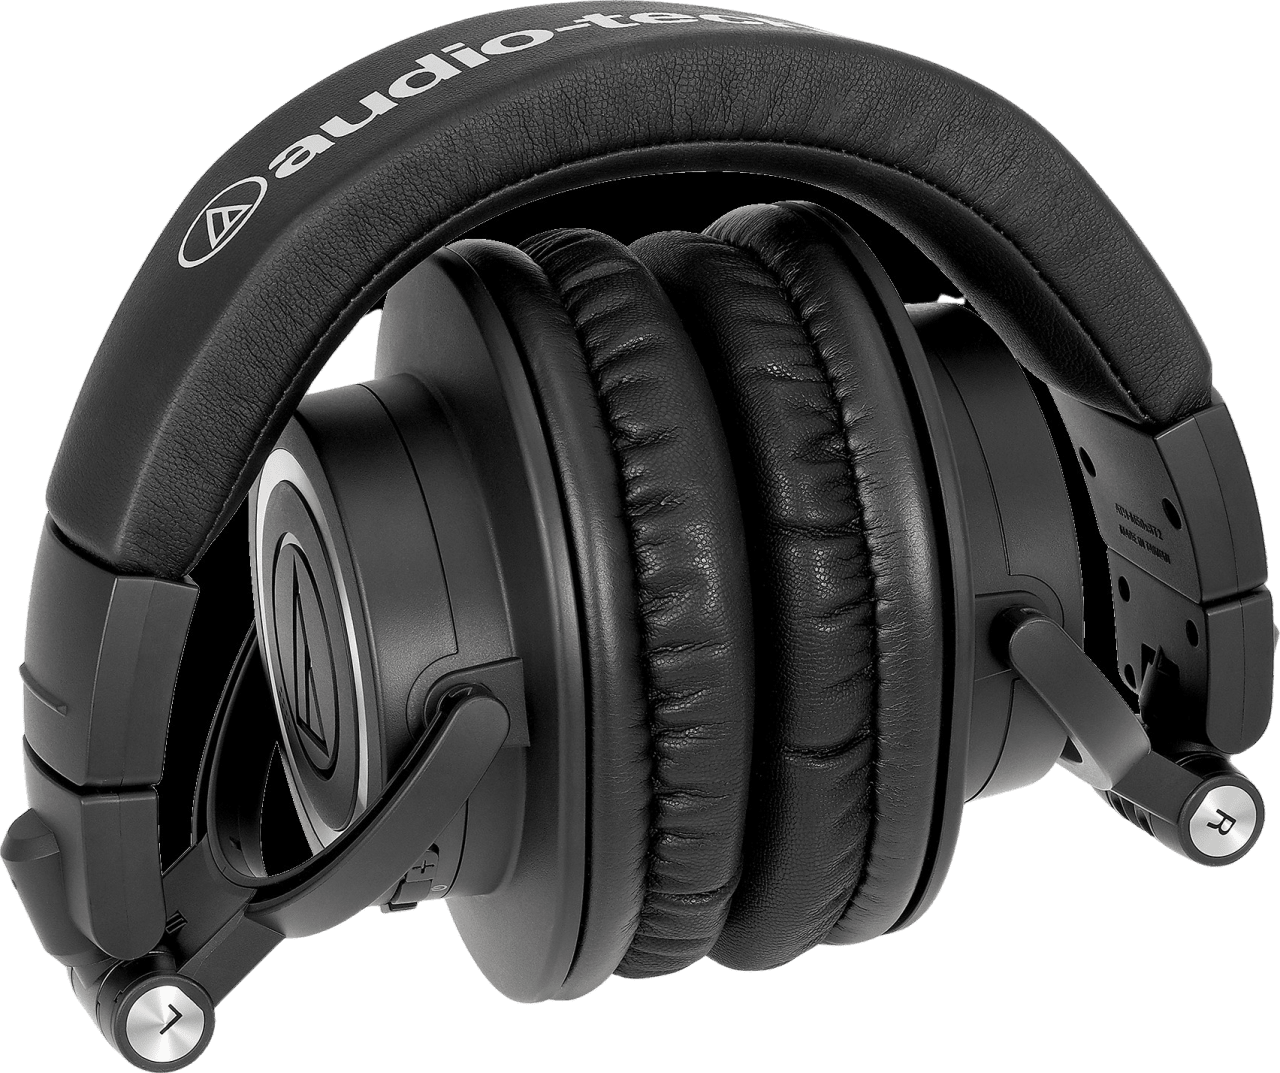 Schwarz Audio-Technica ATH-M50XBT2 Geschlossener, drahtloser, dynamischer Over-Ear-Monitor-Kopfhörer für professionelle Anwender.4